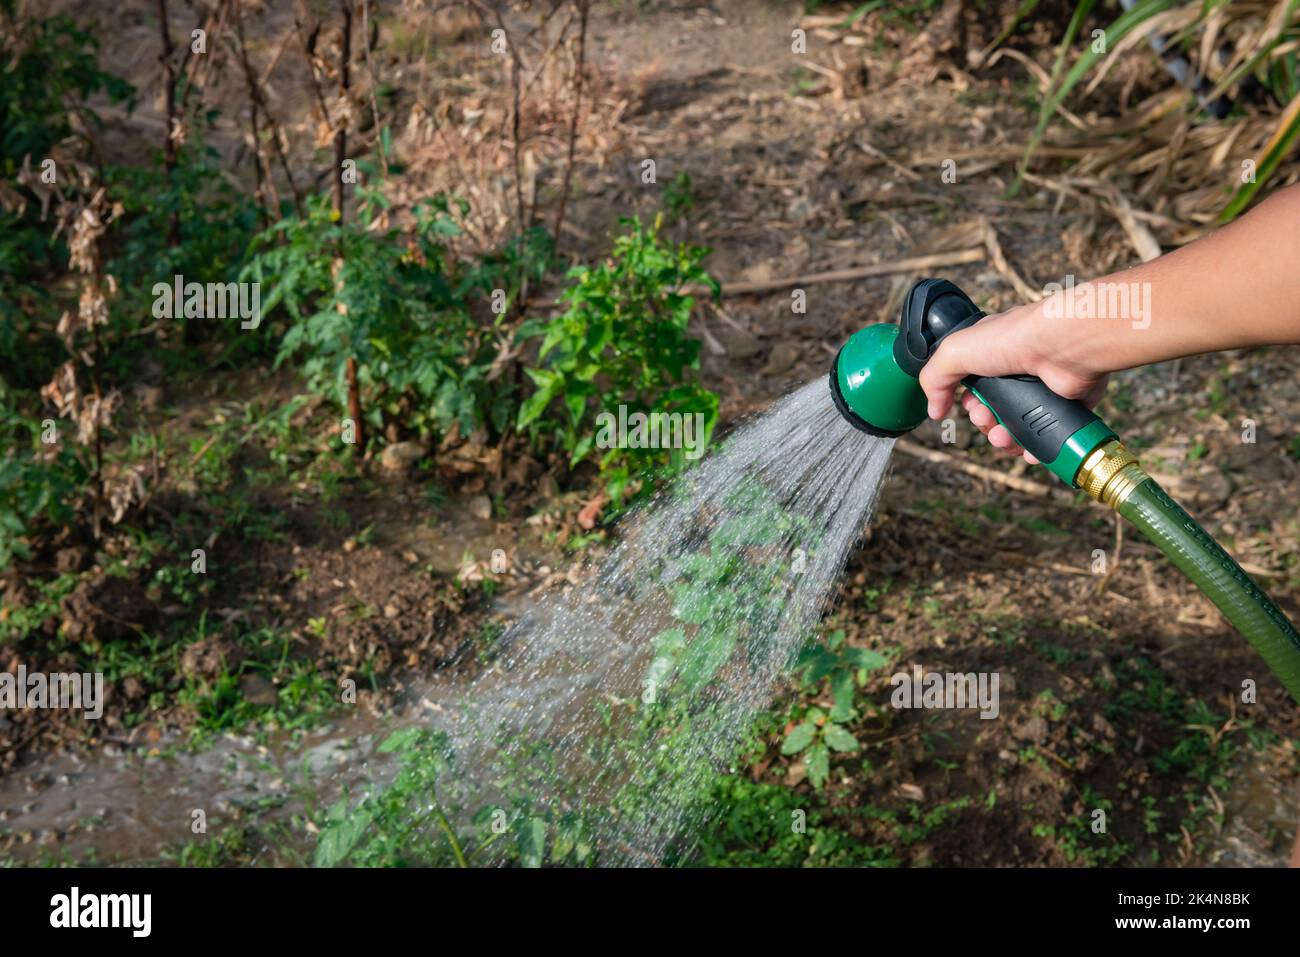 Giardiniere irrigazione piante giardino assegnazione spruzzare acqua doccia tubo flessibile Foto Stock